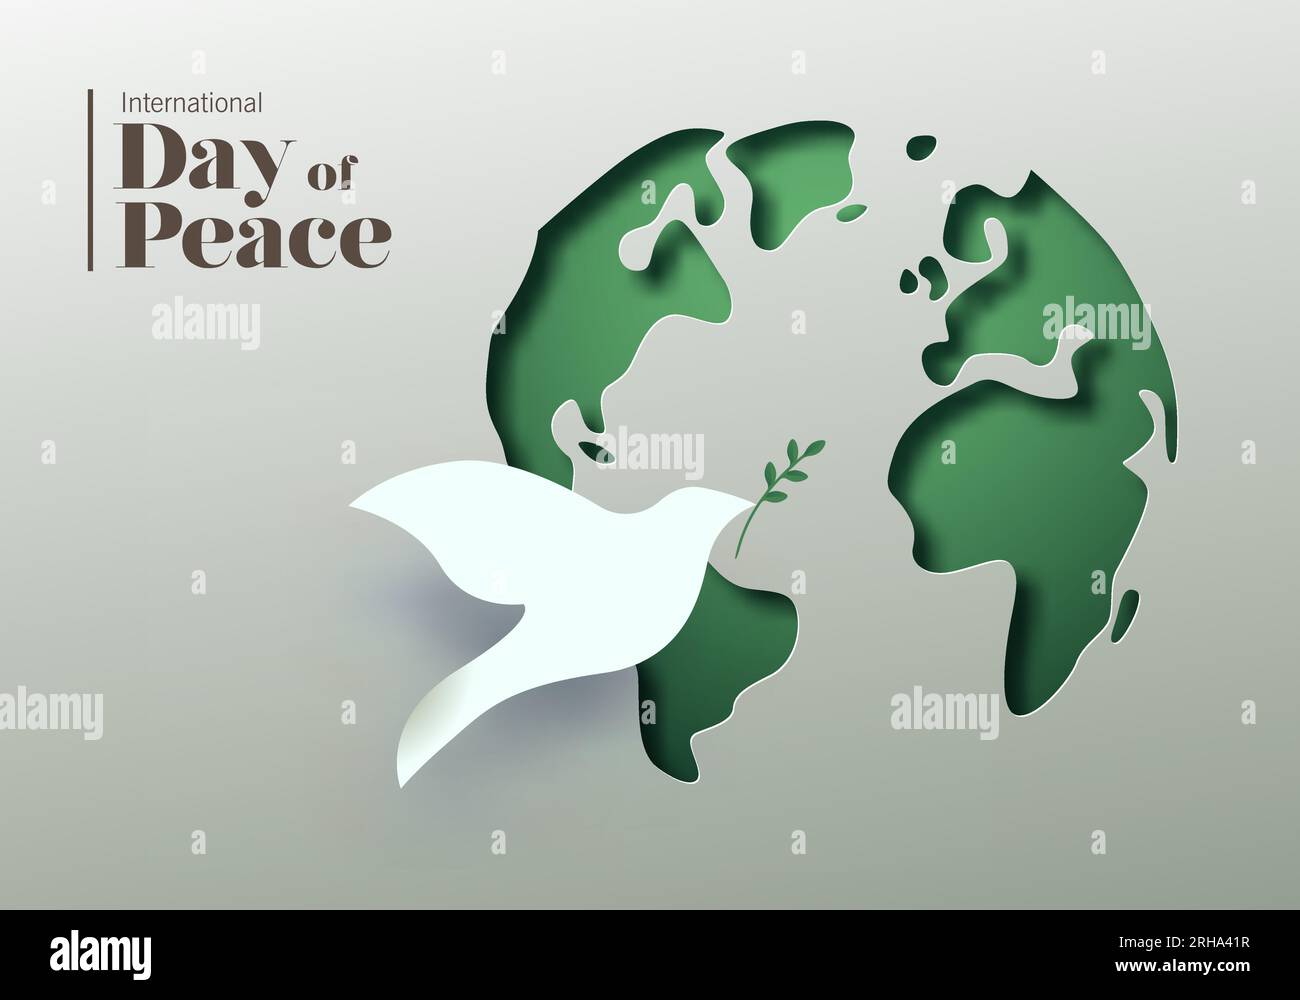 Vektorkarte zum internationalen Friedenstag. 3D Papercut-Weltkarte und Symbol für weiße Taubenvögel. Grafikdesign zur Feier der ideale des Friedens Stock Vektor